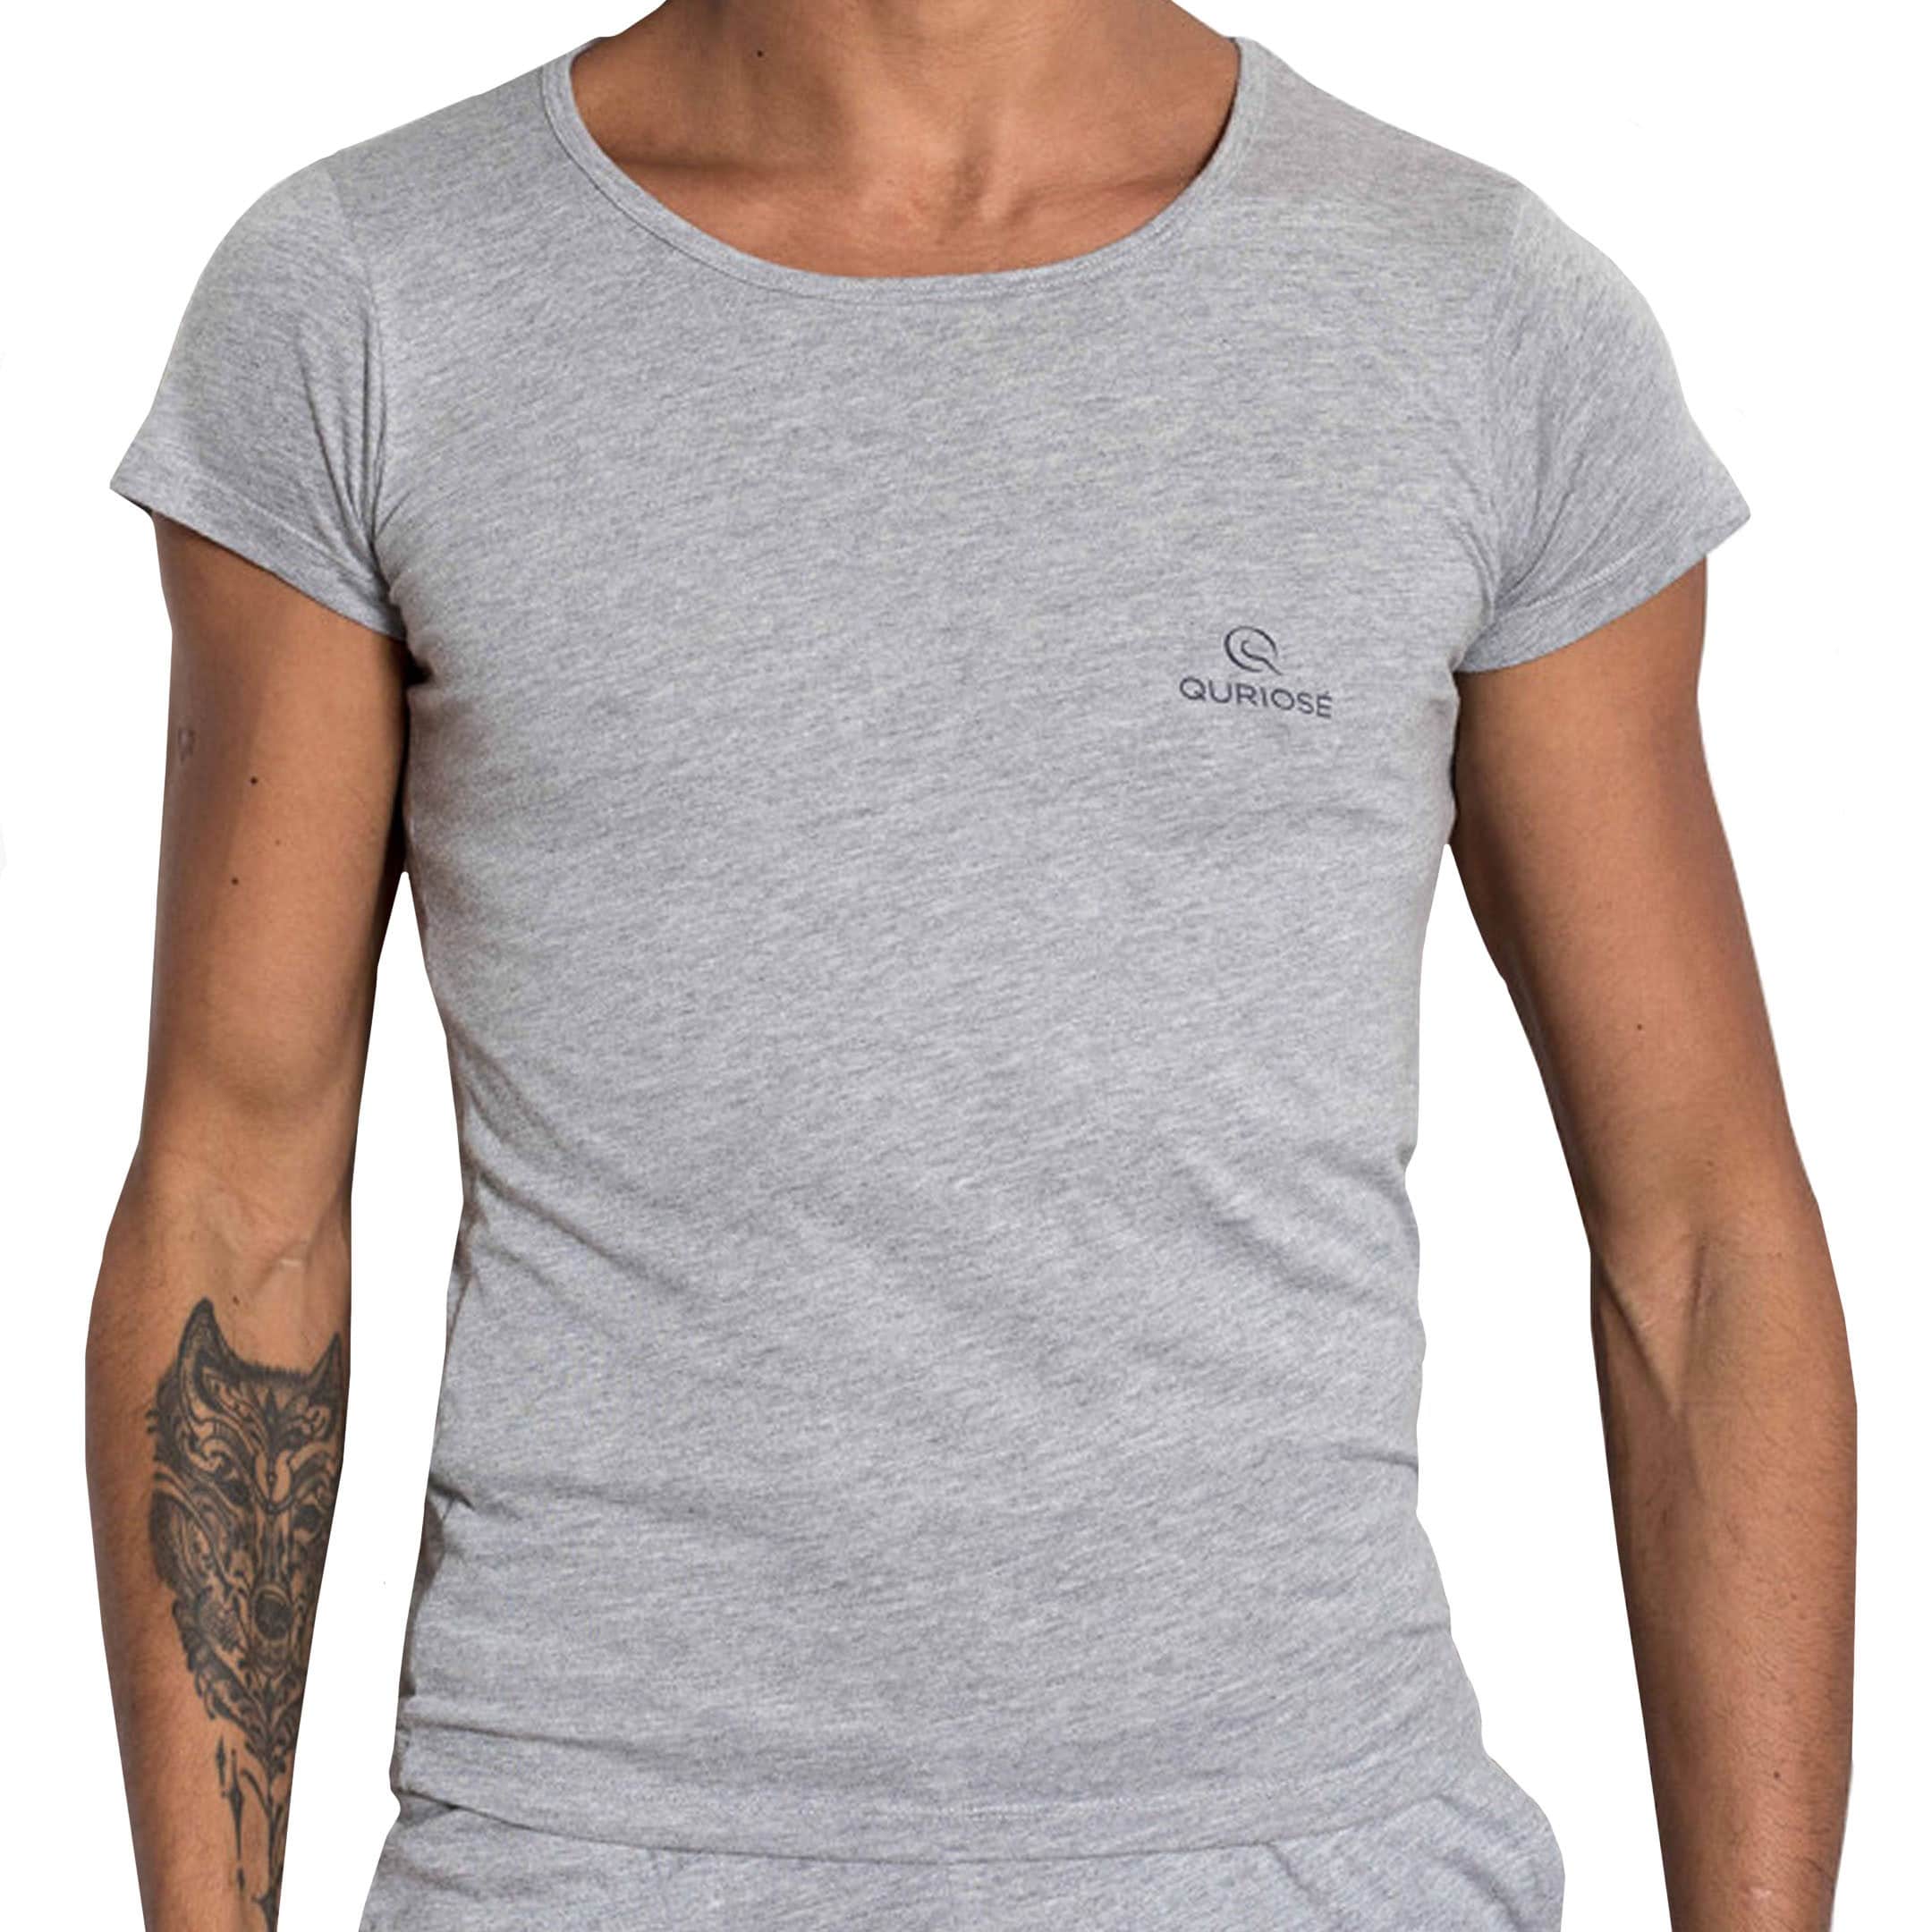 Cotton | Grey INDERWEAR - Bliss T-Shirt Heather Quriosé